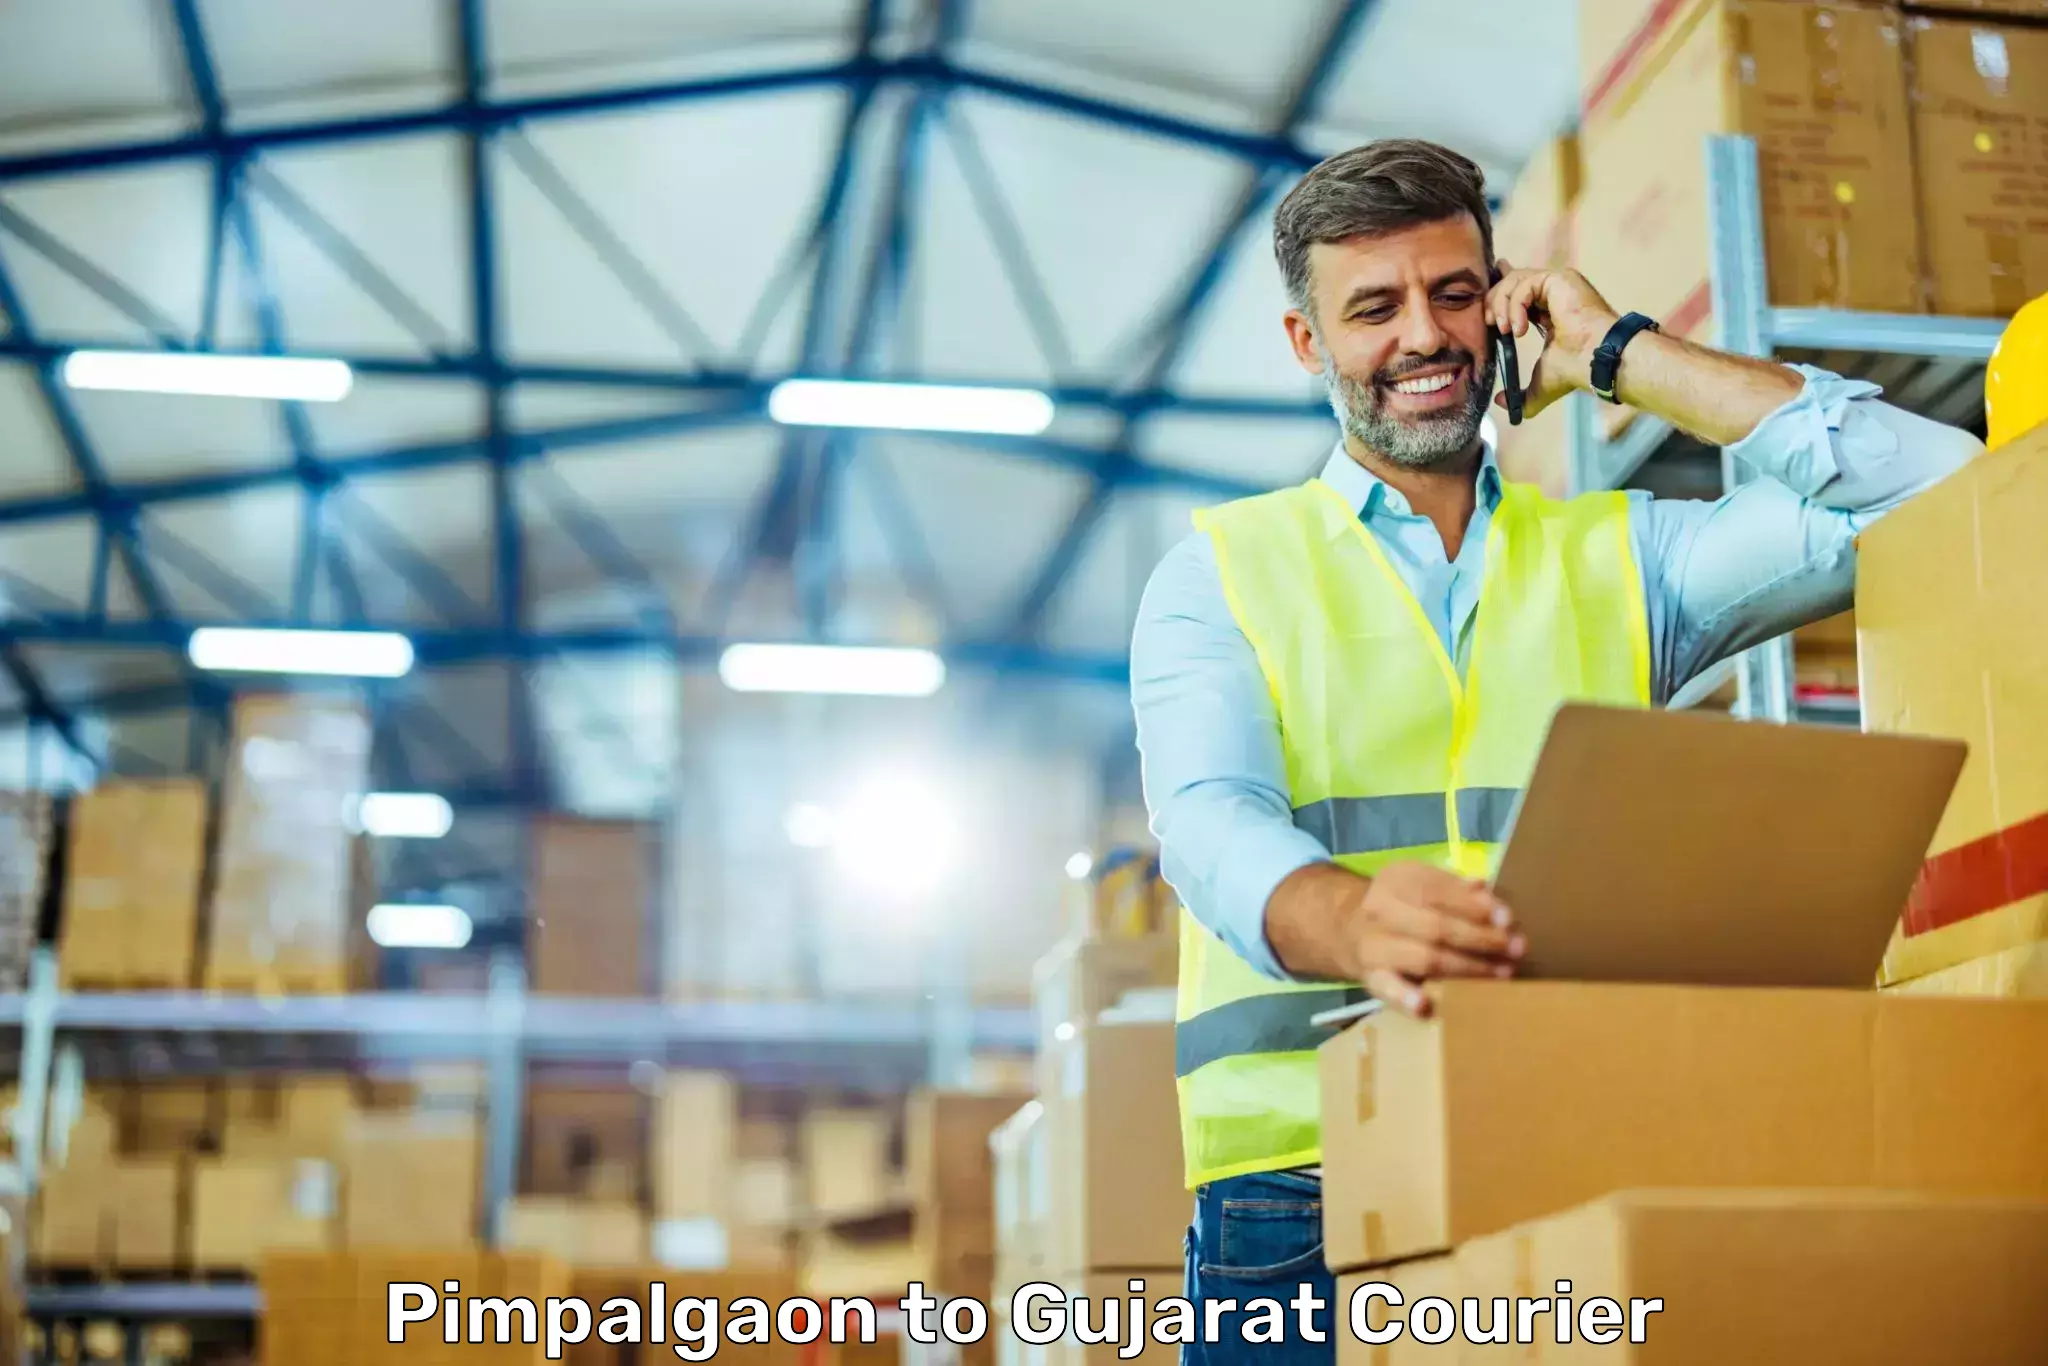 Local delivery service Pimpalgaon to Gujarat